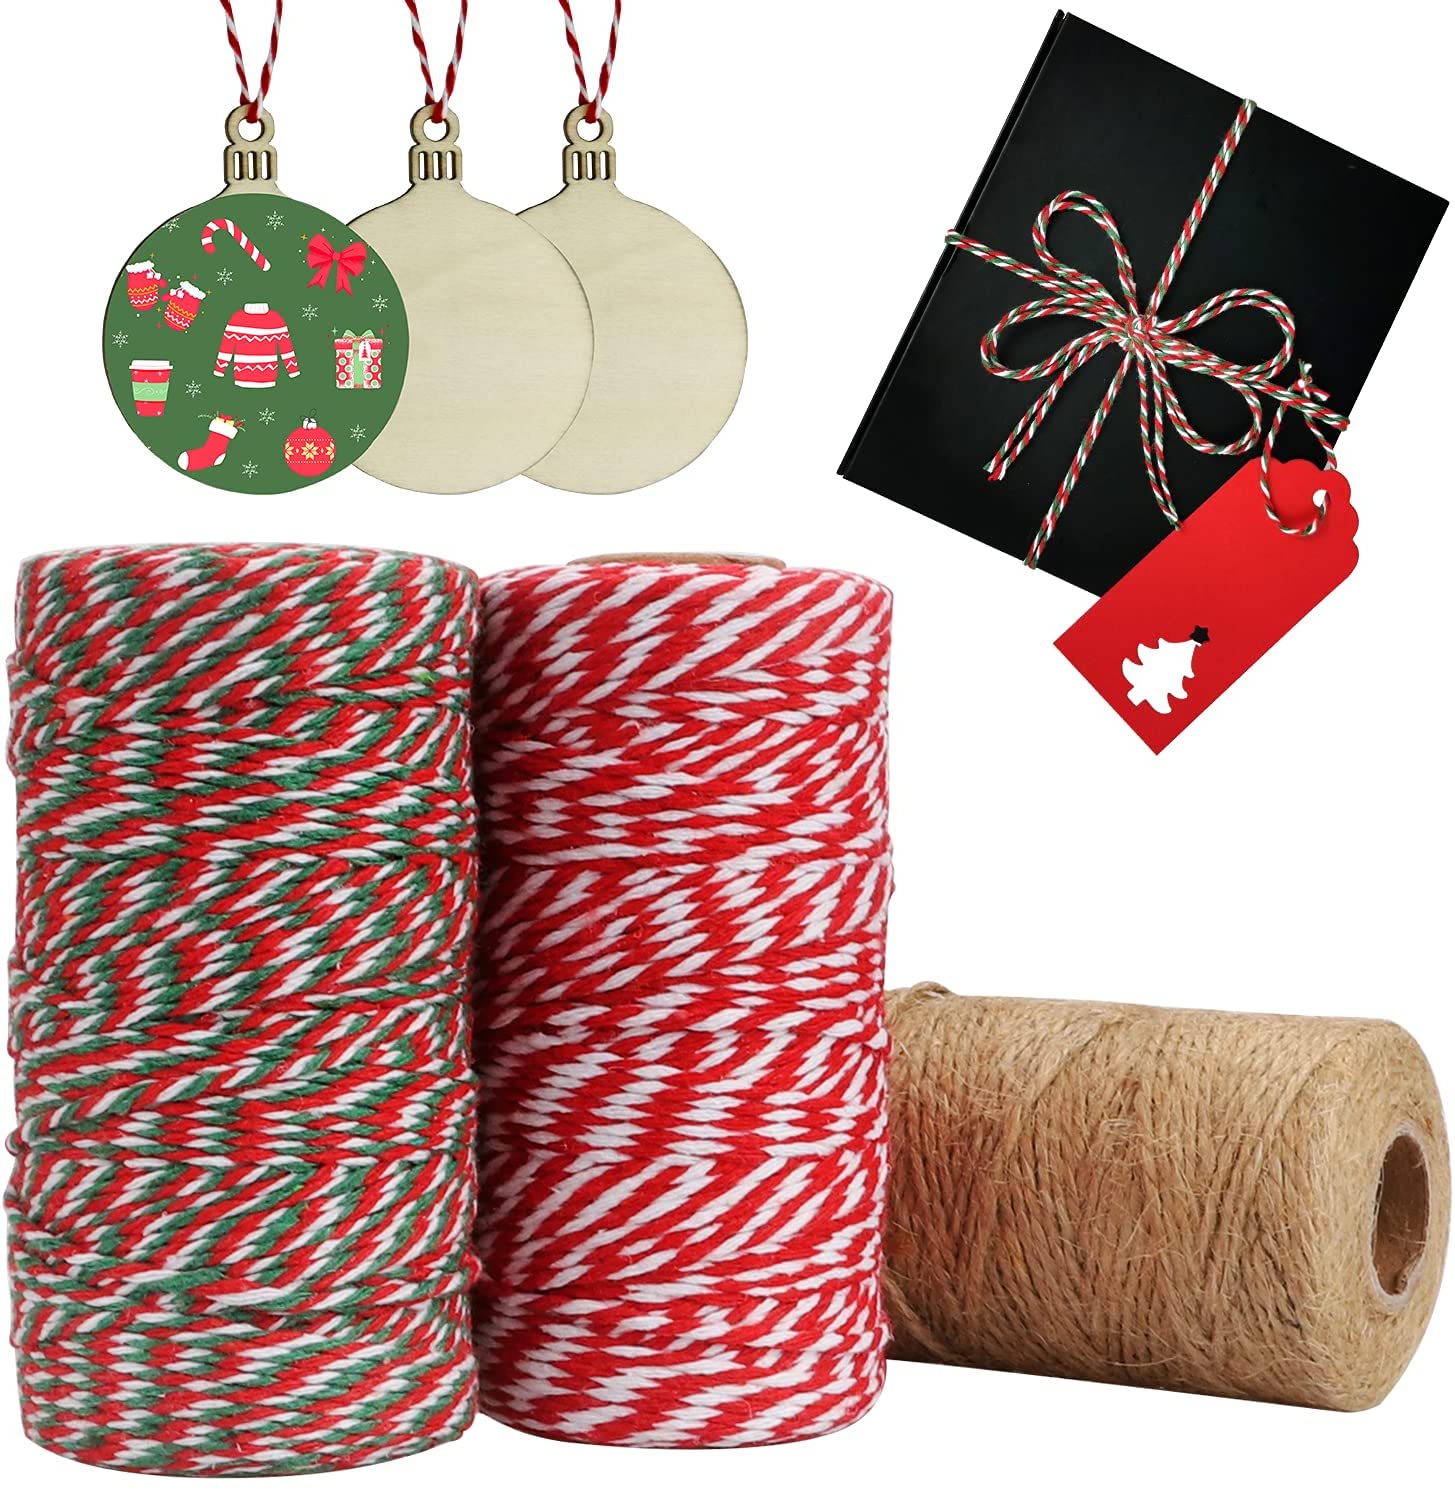 红白棉绳制作圣诞树吊卡绳DIY手工编织双色绳子现货供应图片